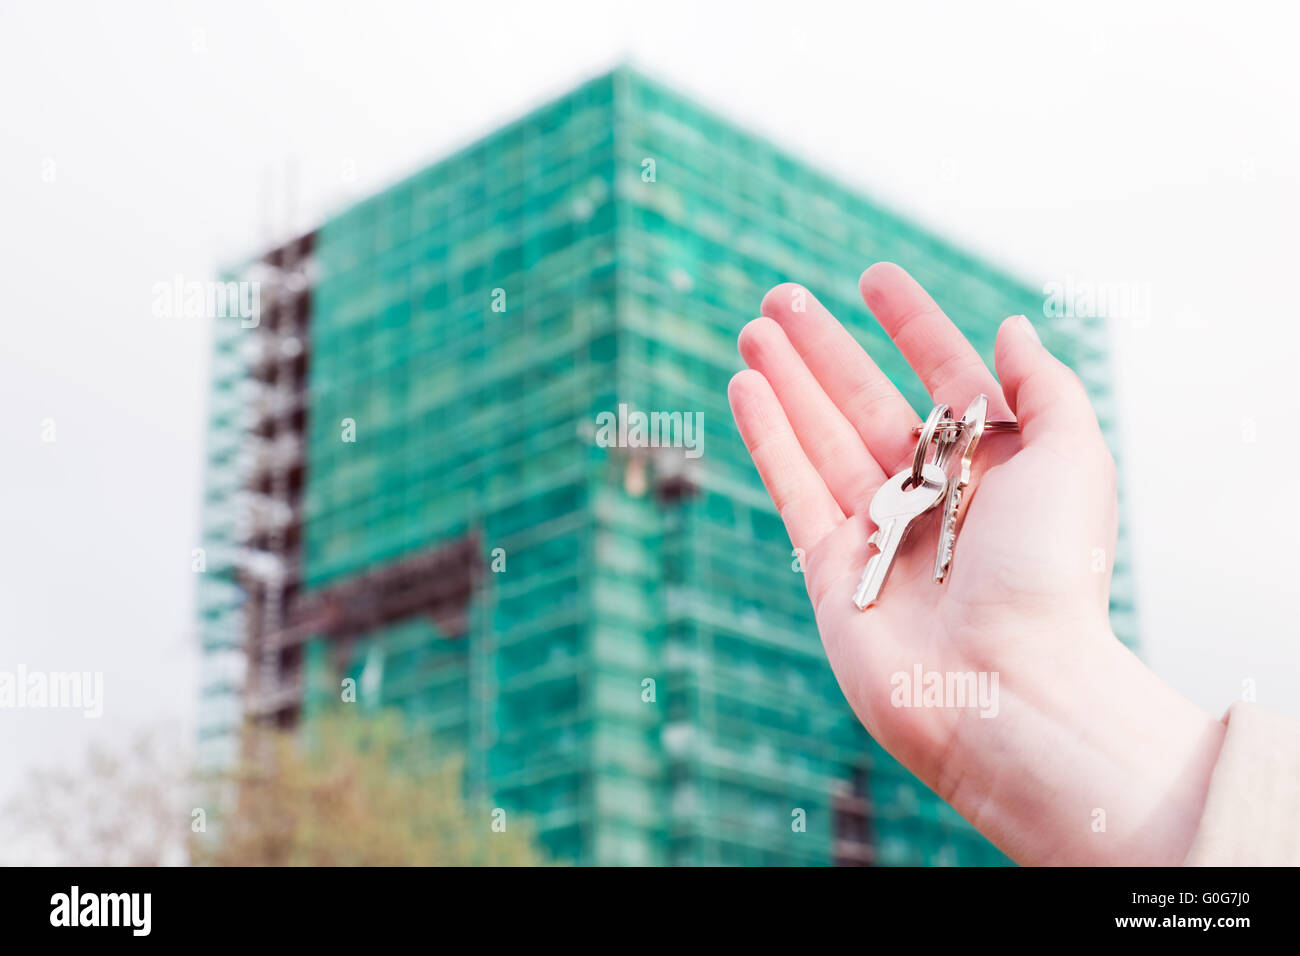 Un agent immobilier holding clés d'un nouvel appartement dans ses mains. Bâtiment en construction immobilier Banque D'Images